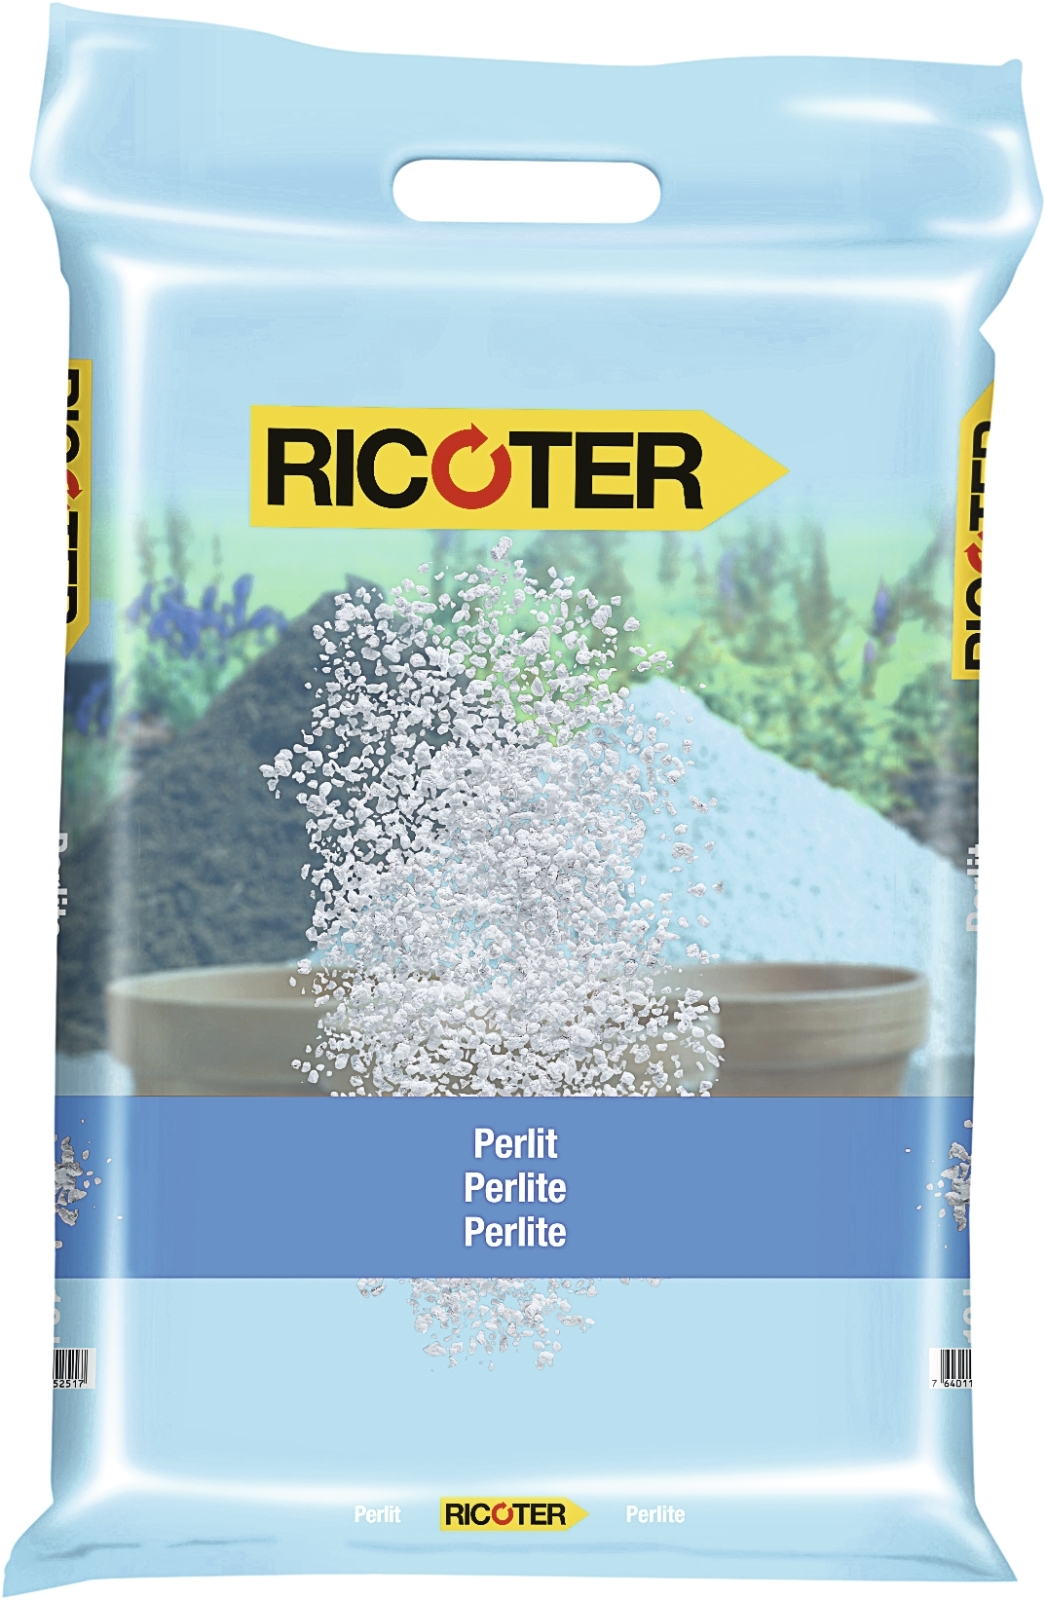 10 Liter Perlite 0-5 mm Pflanzgranulat zur Bodenverbesserung Perlit 1,095 €/l 